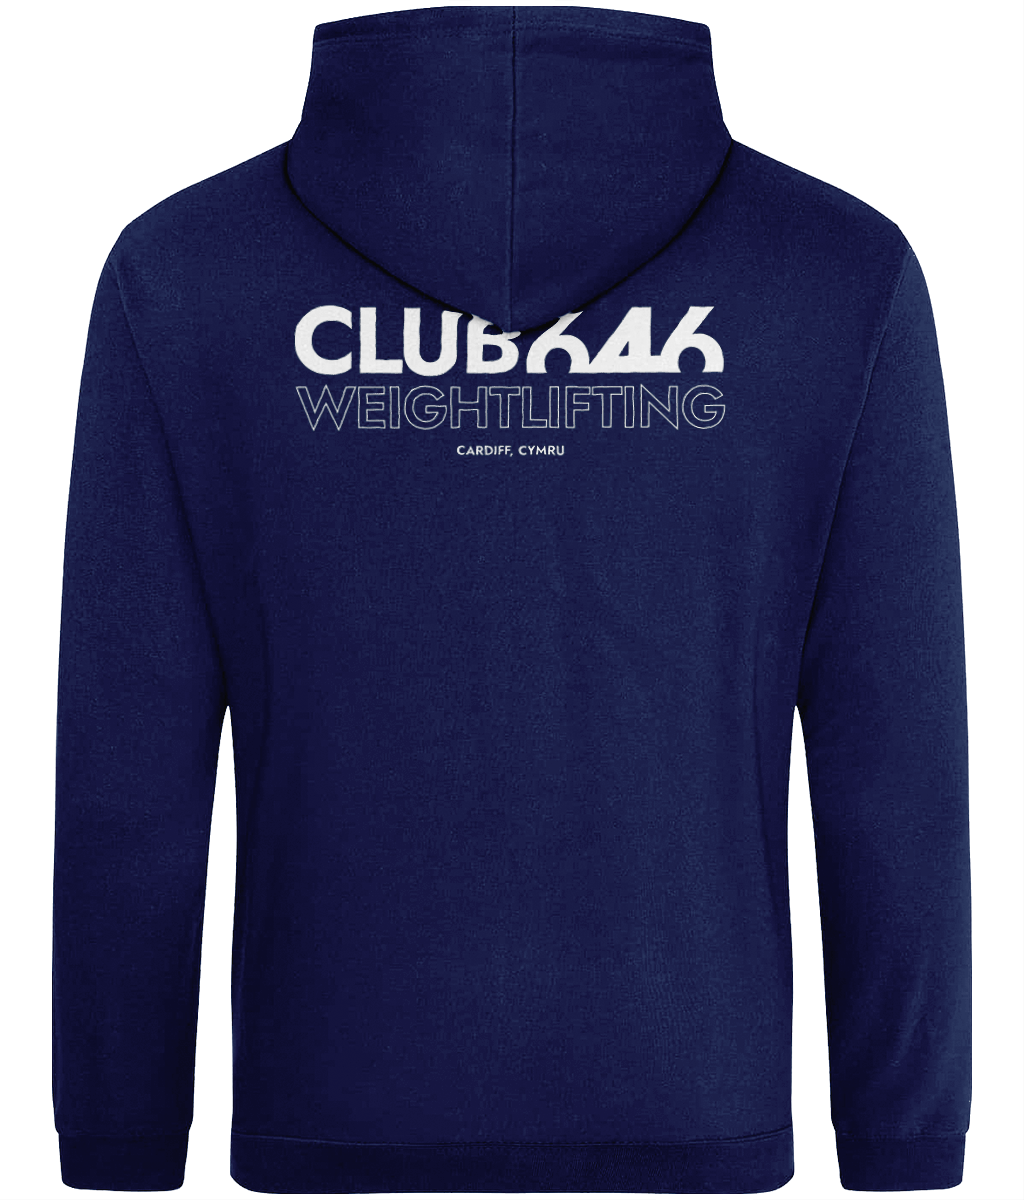 Club 646 hoodie